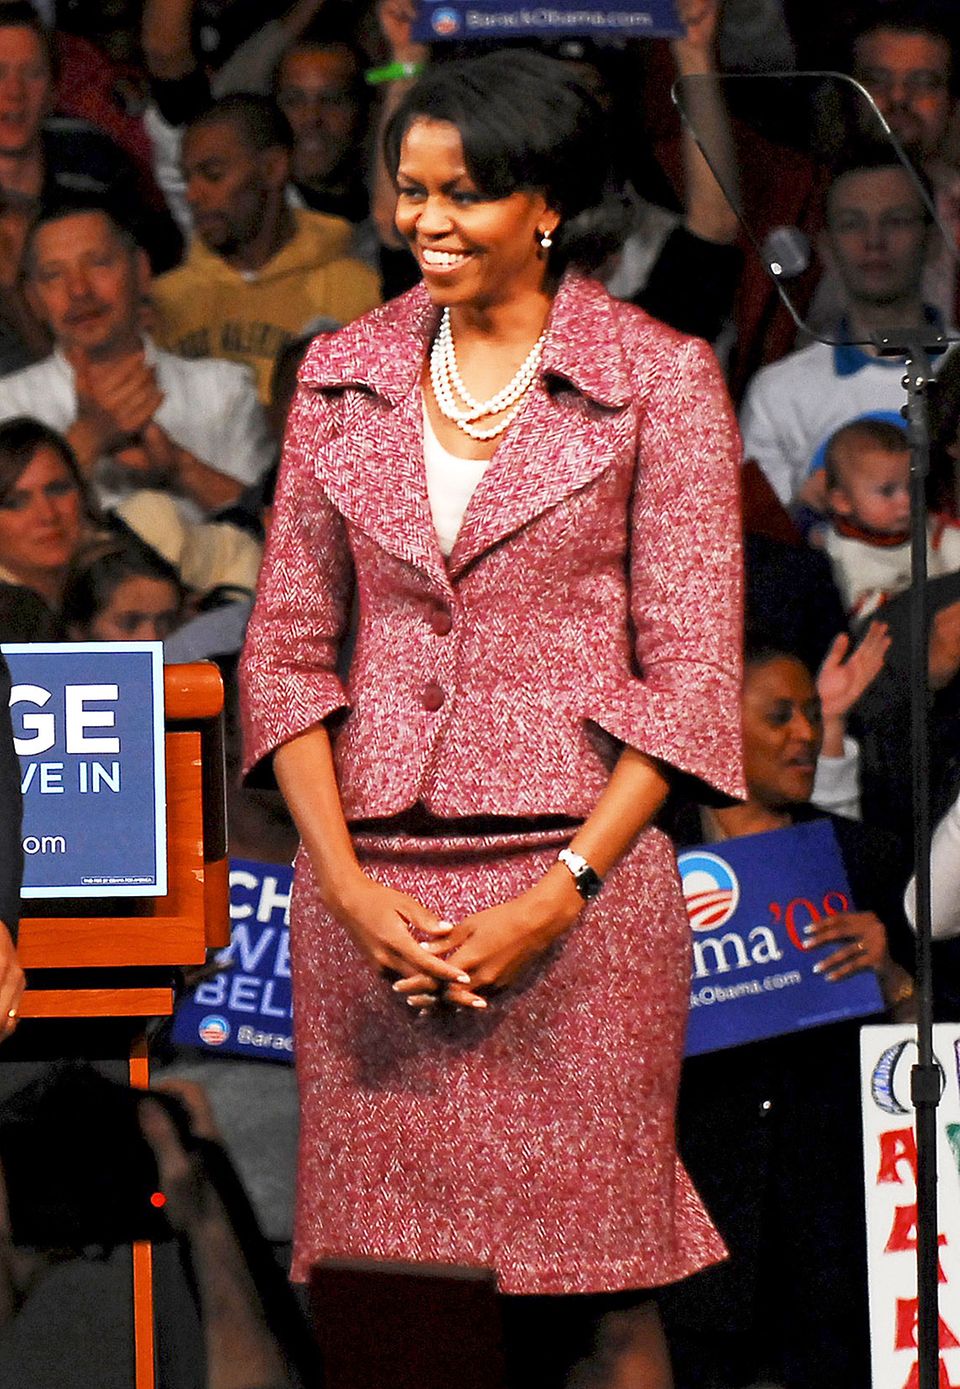 Während des Wahlkampfes 2008 erinnerte Michelle Obama mit ihren Outfits oft an den klassischen und zeitlos-schönen Style von Jackie Kennedy.